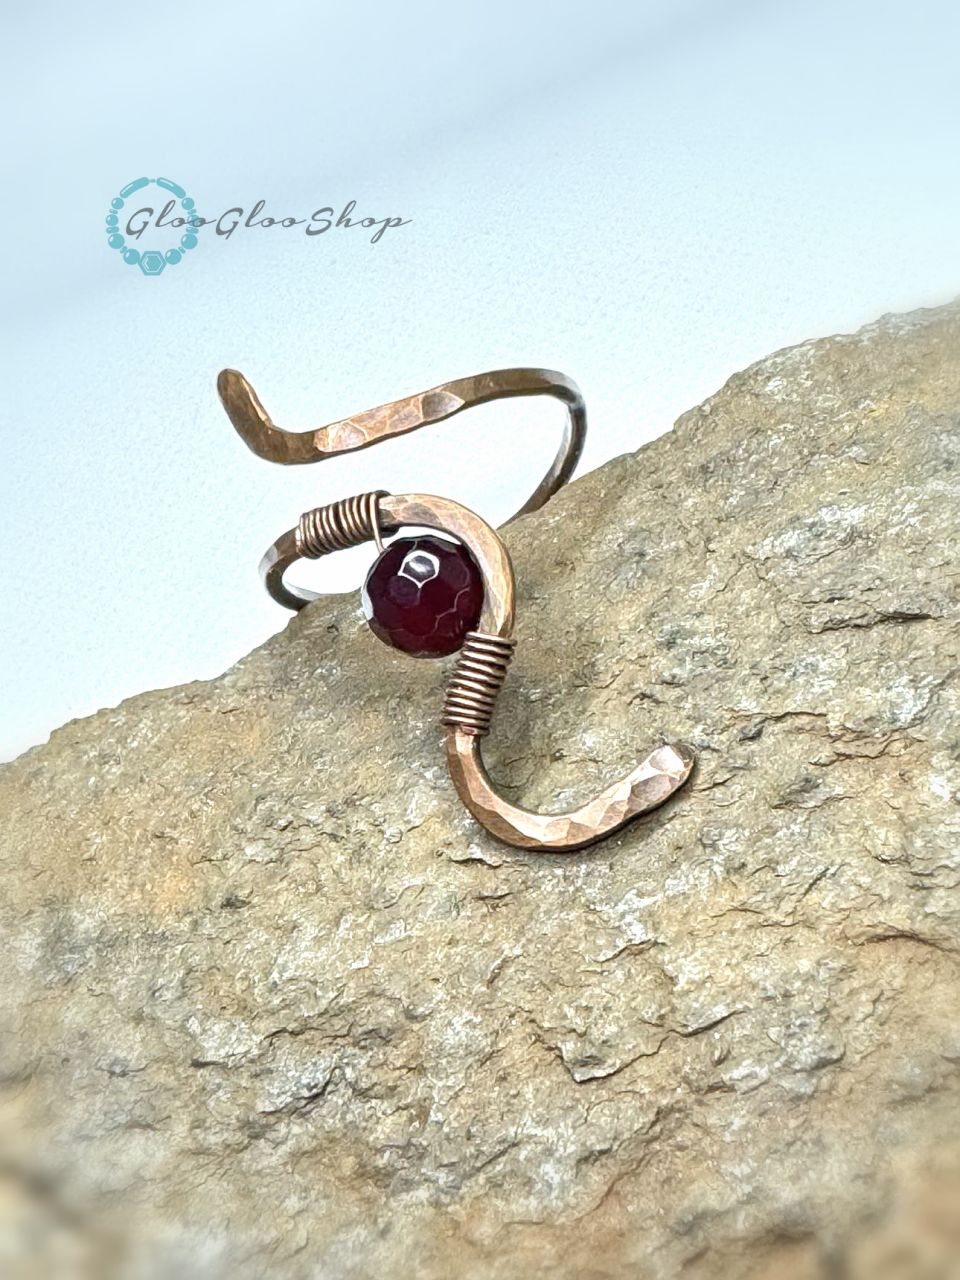 Kanyargós achát vörösréz egyedi gyűrű